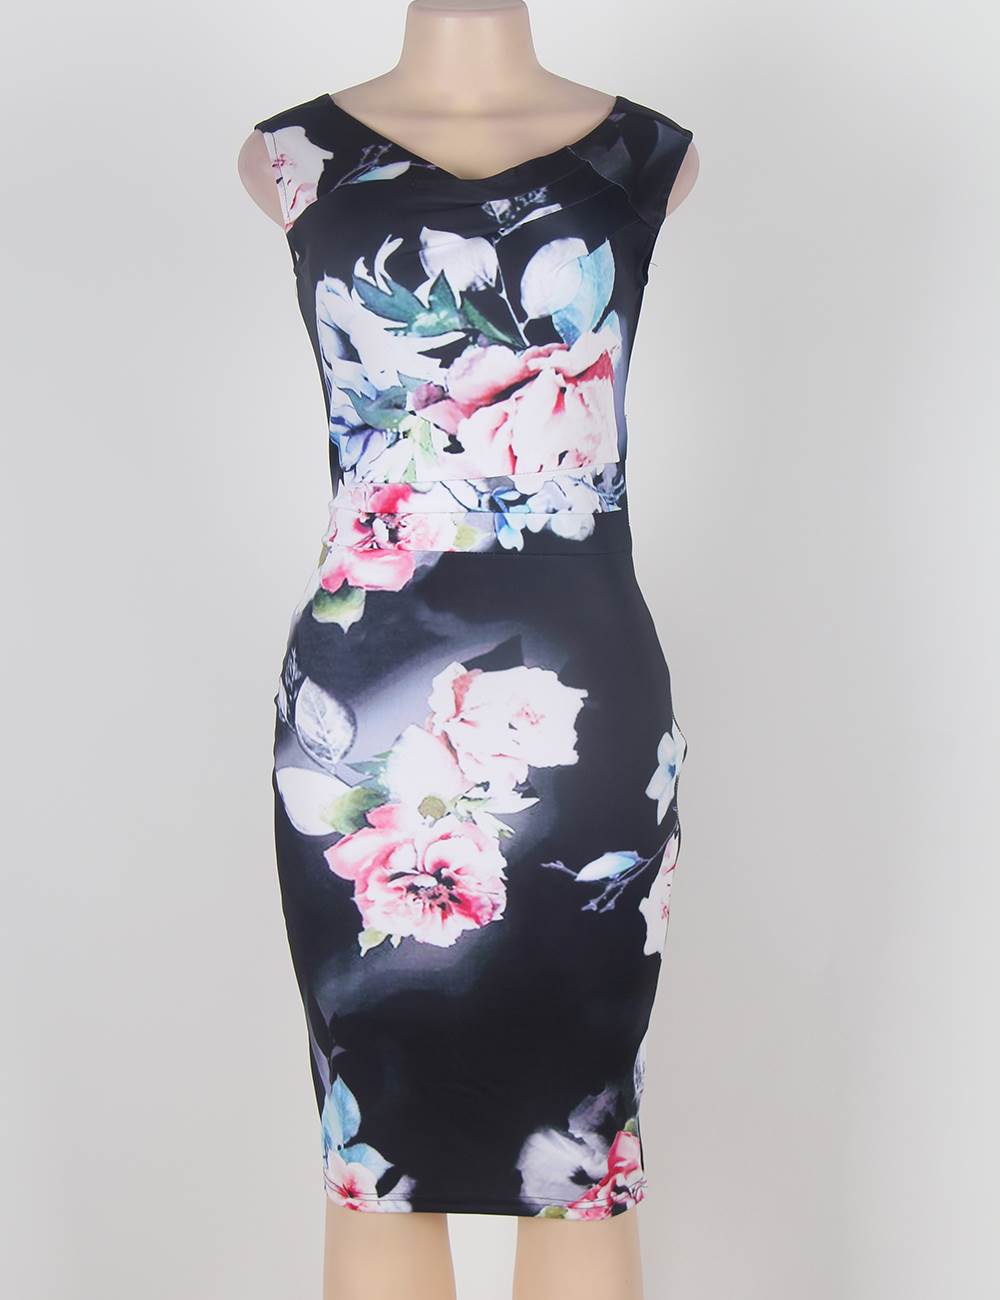 Fashion print dress lady selling cheap wholesale online